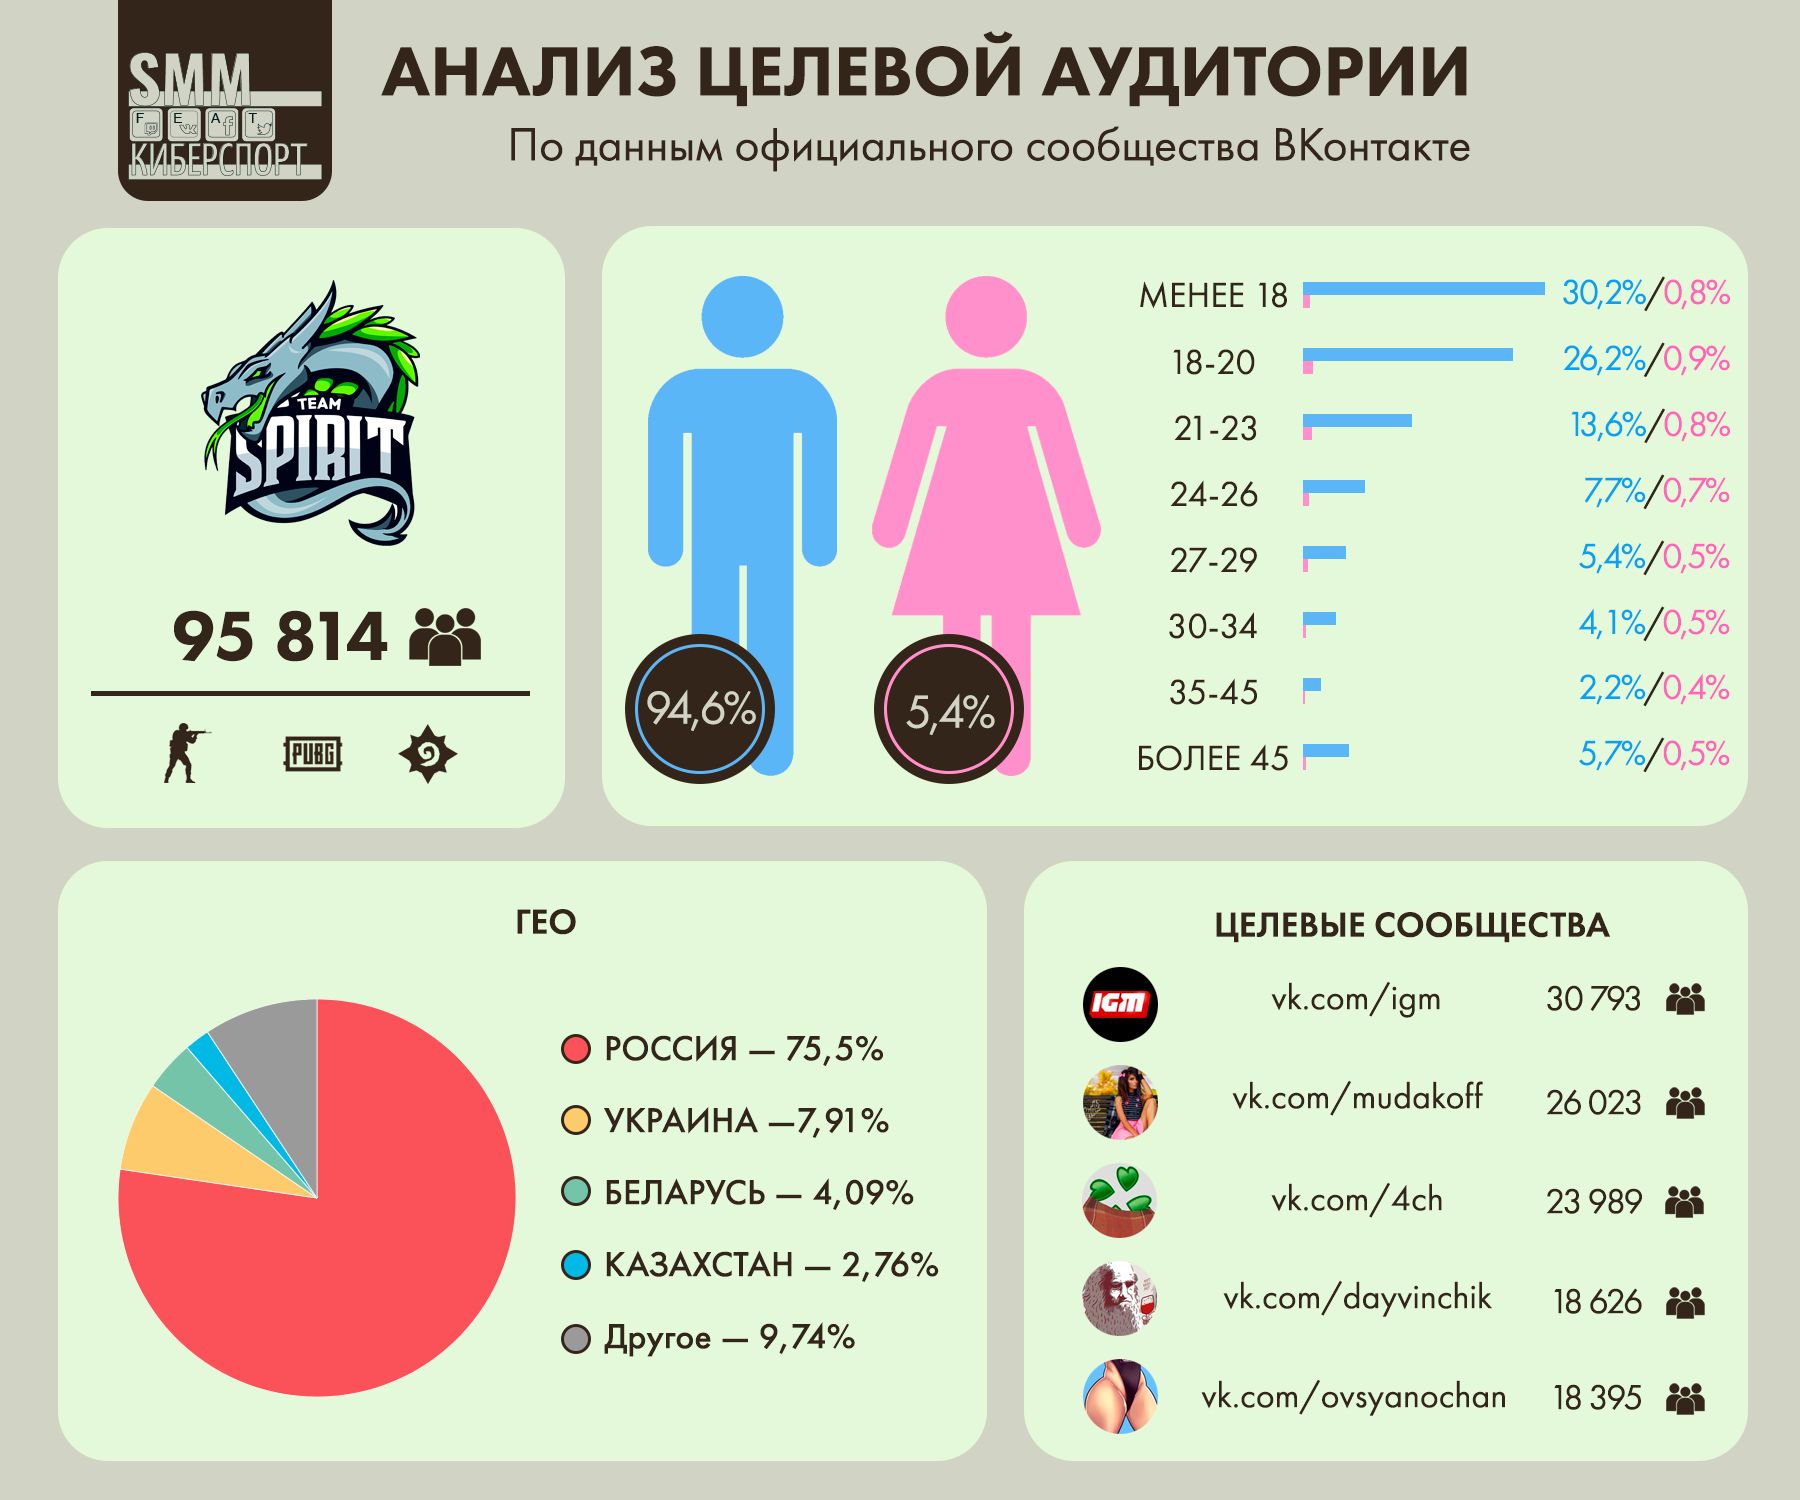 Анализ целевой аудитории ВКонтакте киберспортивного клуба Team Spirit